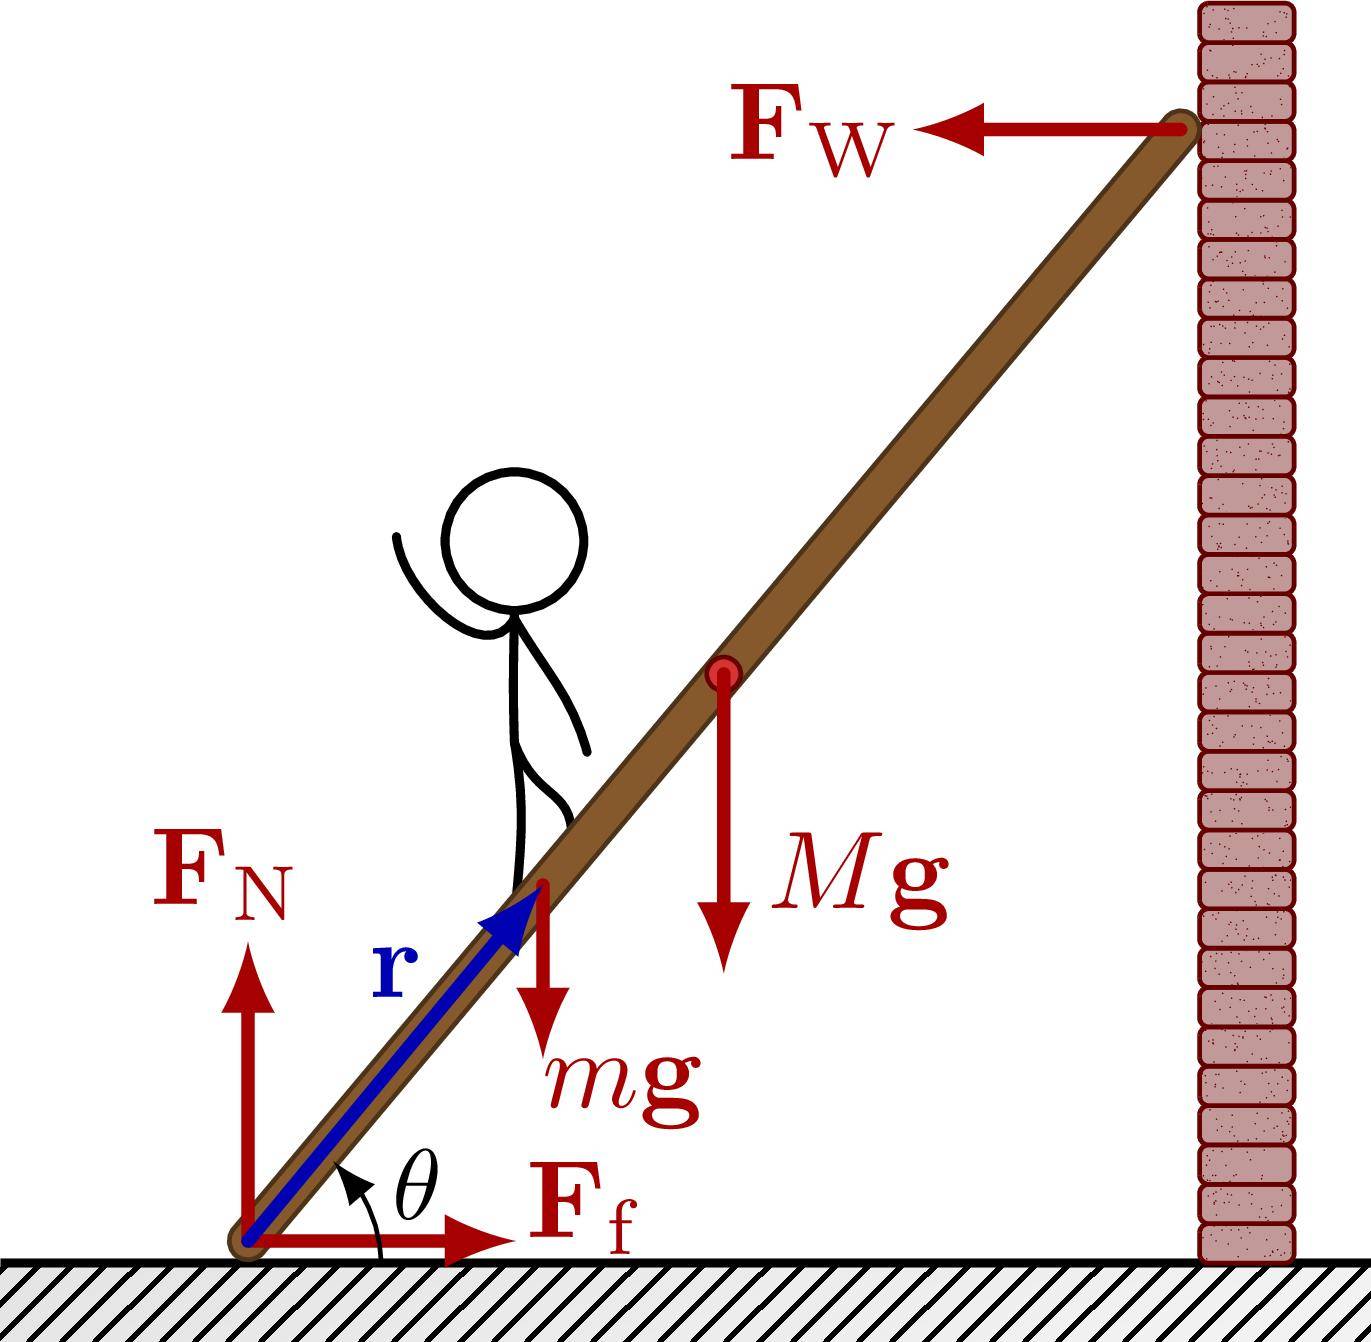 TikZ 绘制梯子的稳定性受力分析示意图